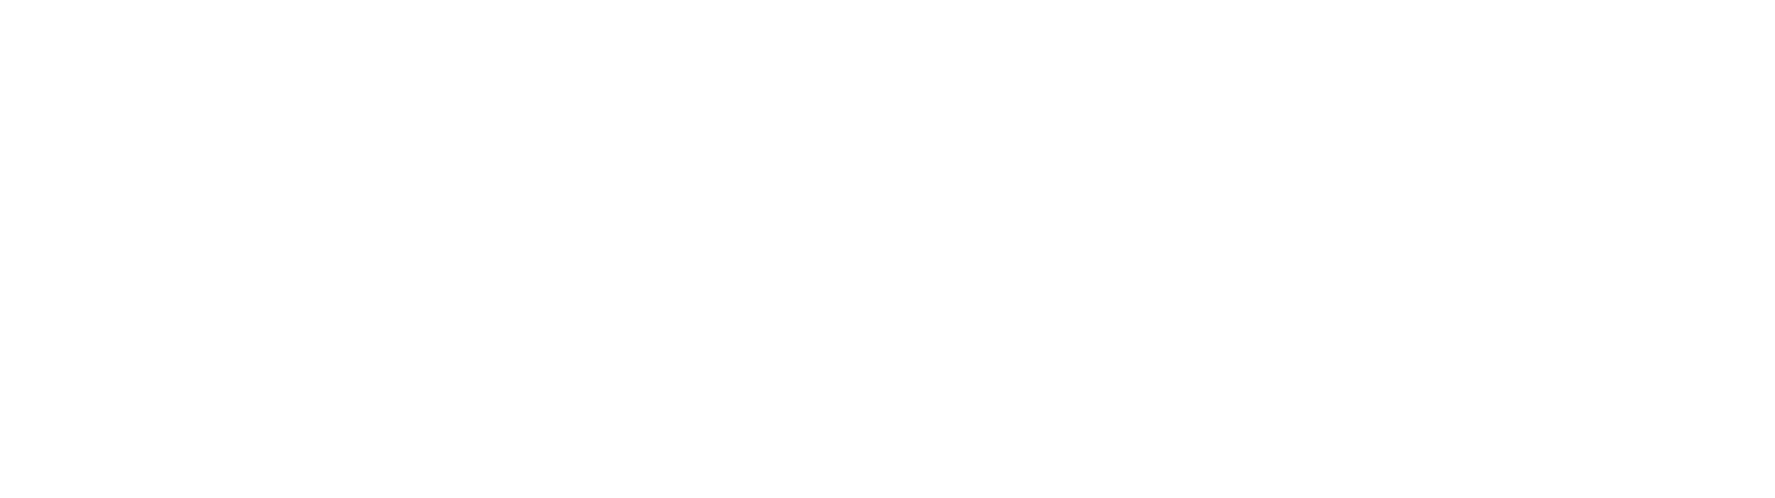 Mellendorfer TV Basketball – GINNERS